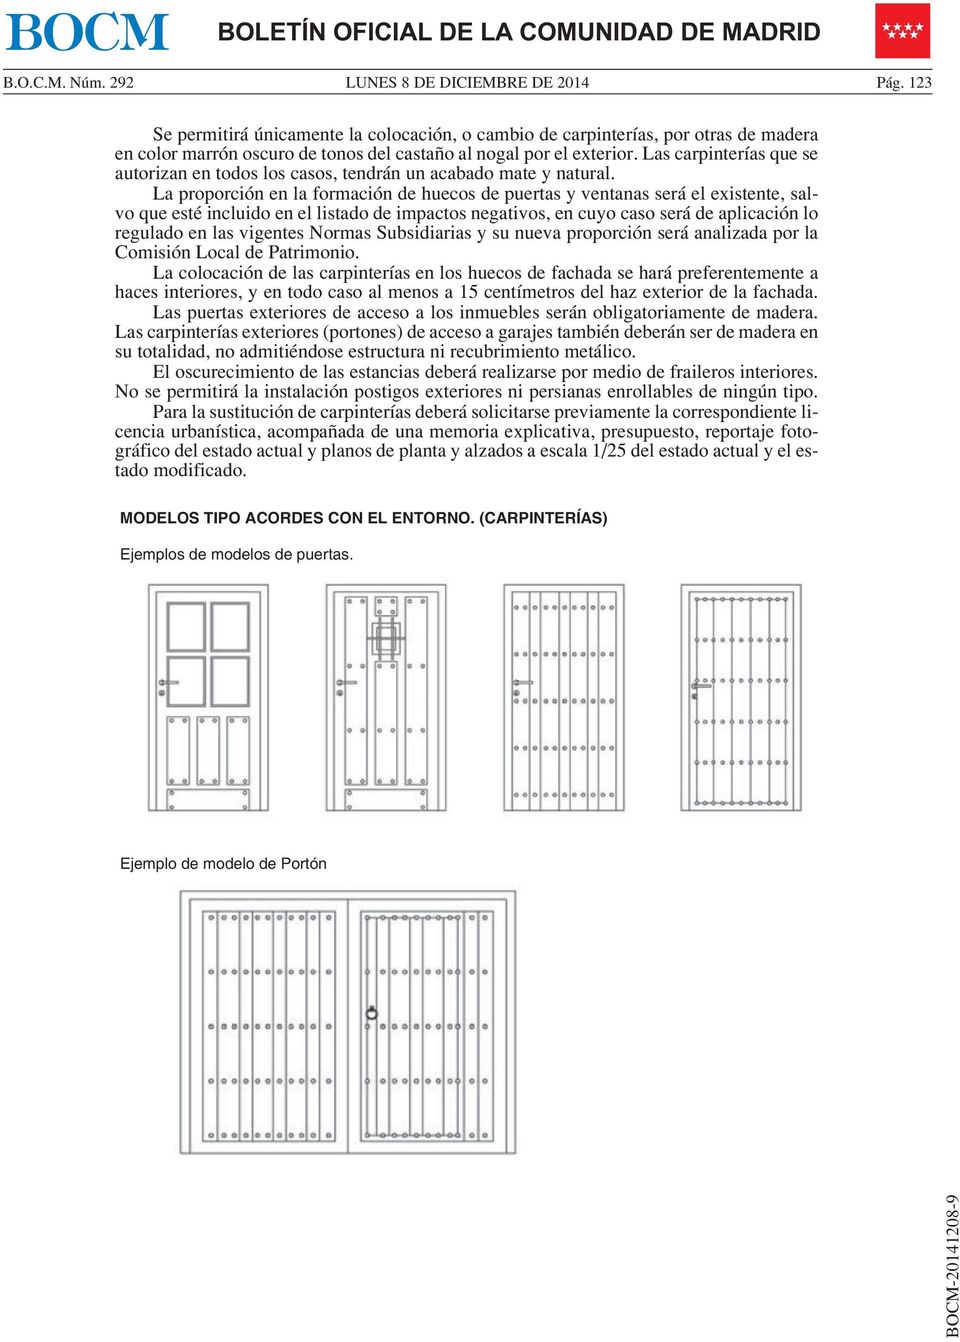 La proporción en la formación de huecos de puertas y ventanas será el existente, salvo que esté incluido en el listado de impactos negativos, en cuyo caso será de aplicación lo regulado en las